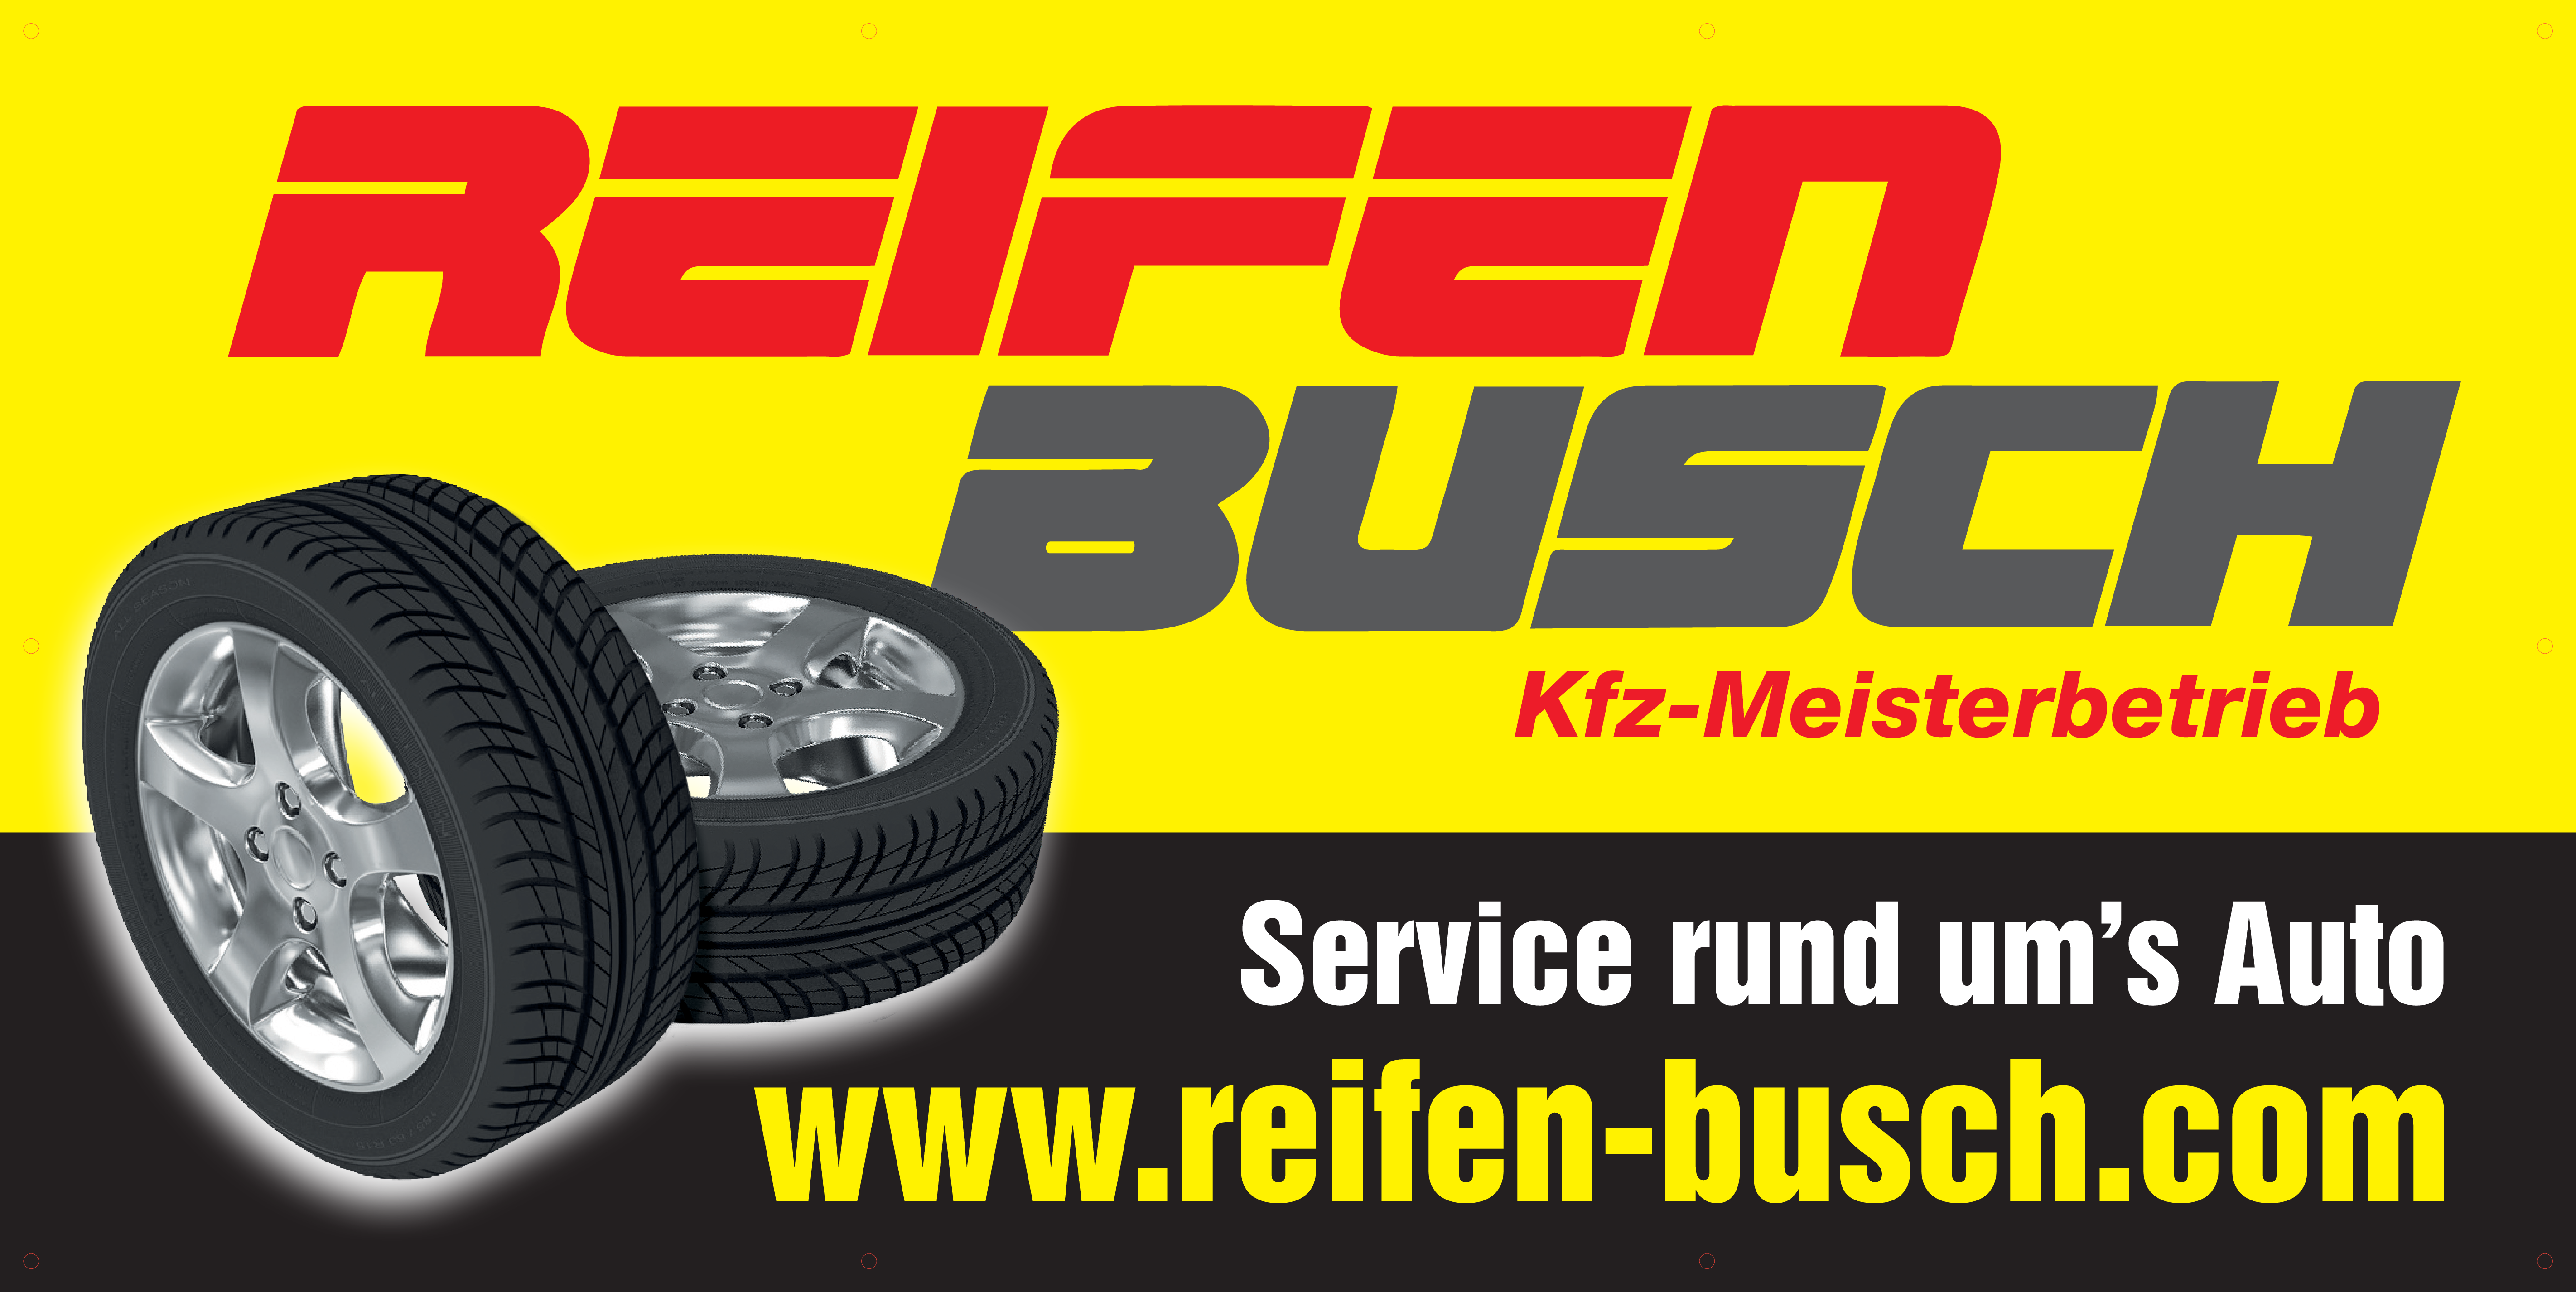 DJK Sponsor Reifen Busch